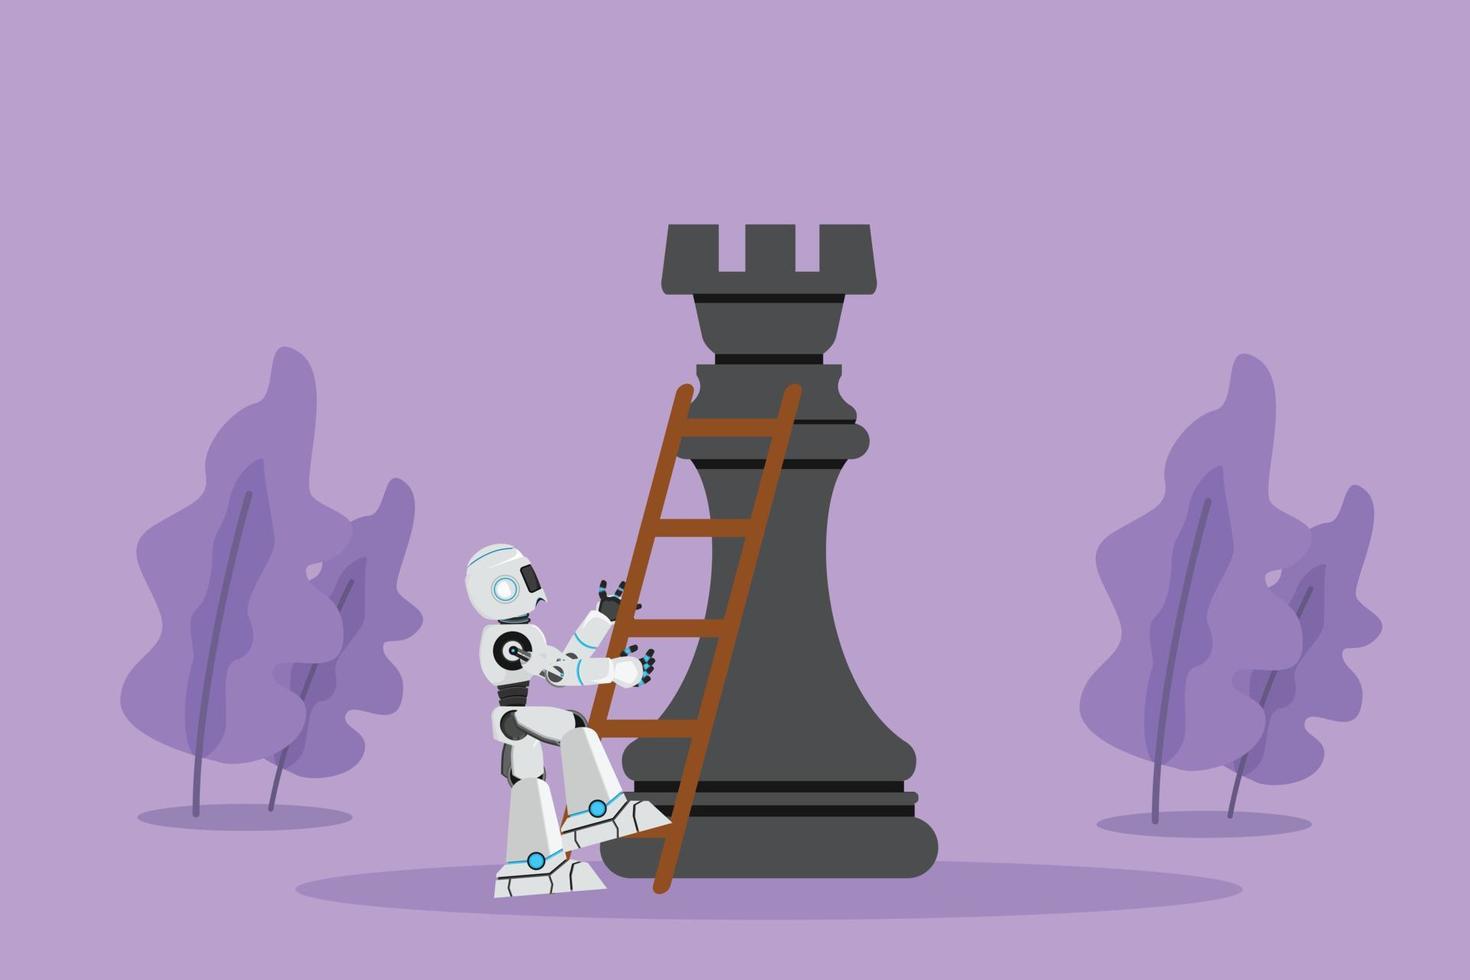 cartoon flache zeichnung roboter klettern riesige turm schachfigur mit leiter. Strategischer oder Smart-Move-Wettbewerb. robotische künstliche Intelligenz. Technologiebranche. Grafikdesign-Vektorillustration vektor